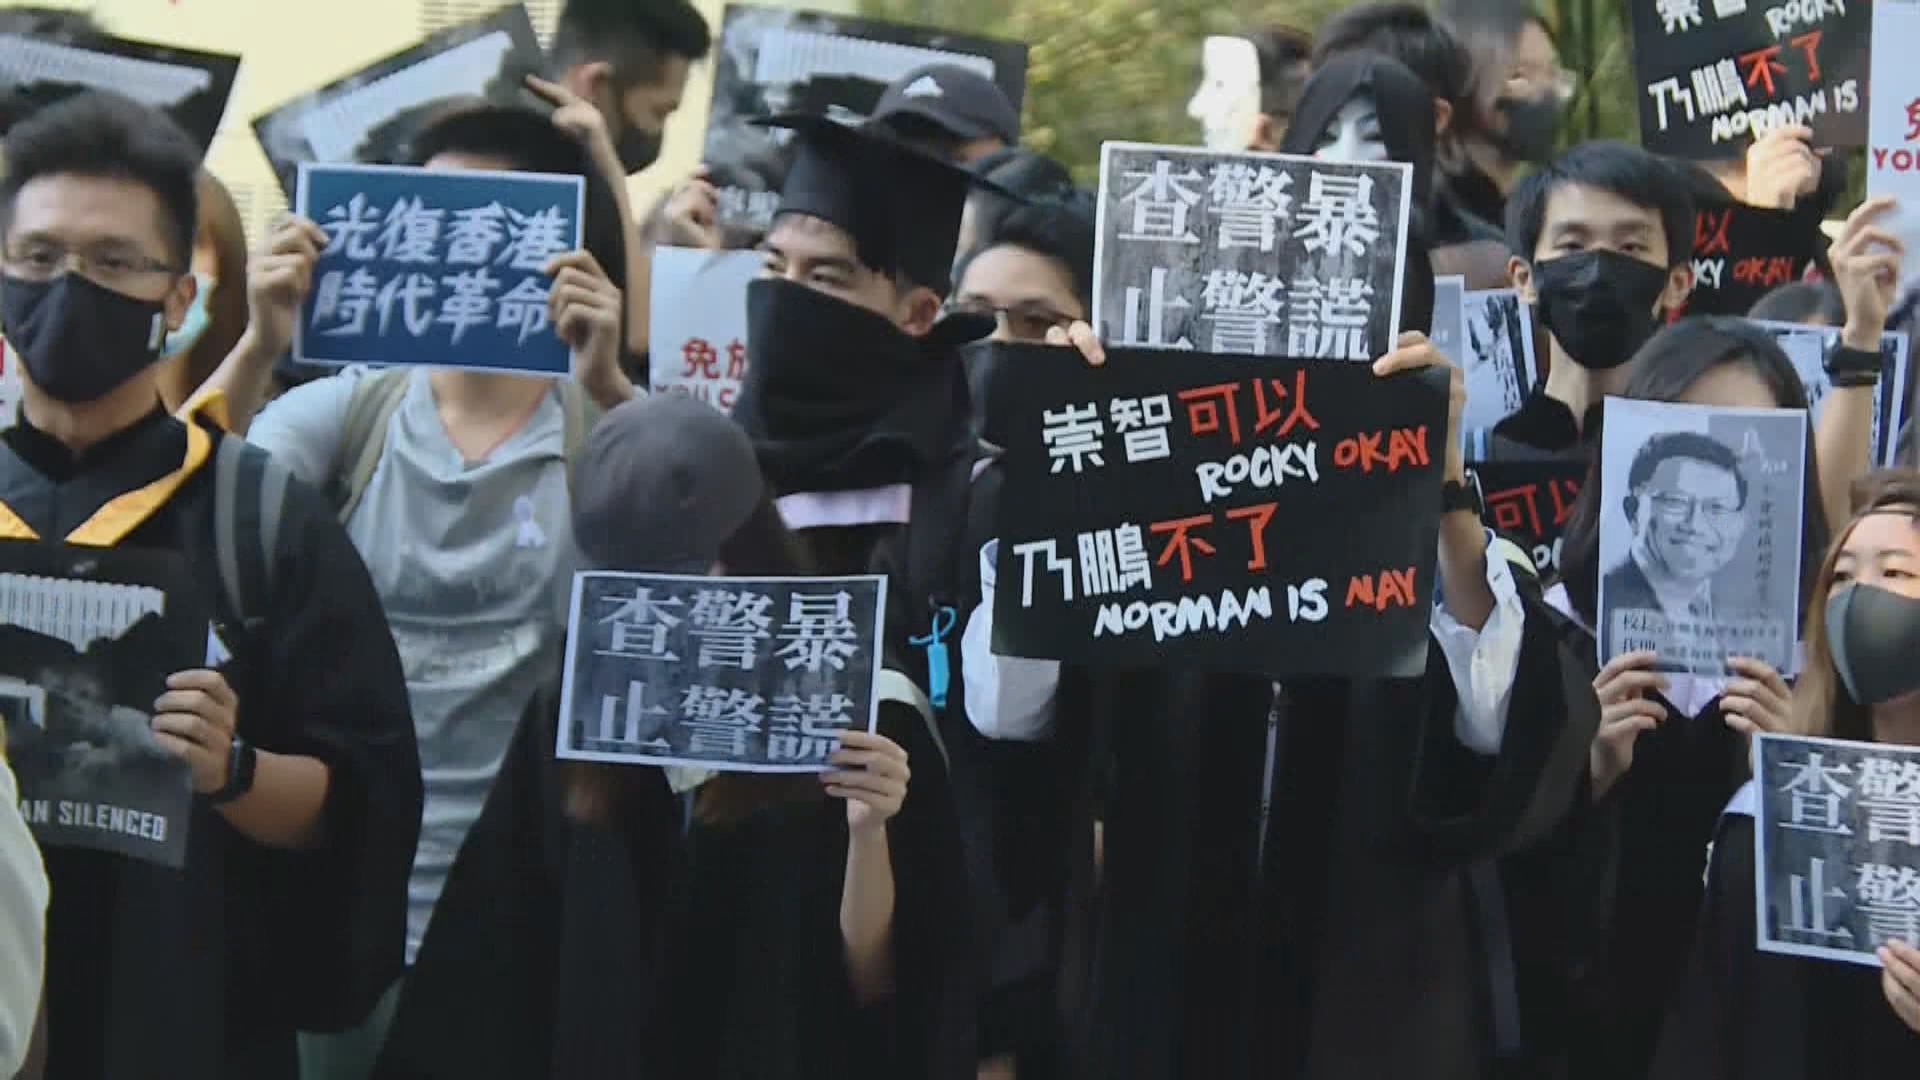 中大學生趁畢業禮遊行聲援被捕同學